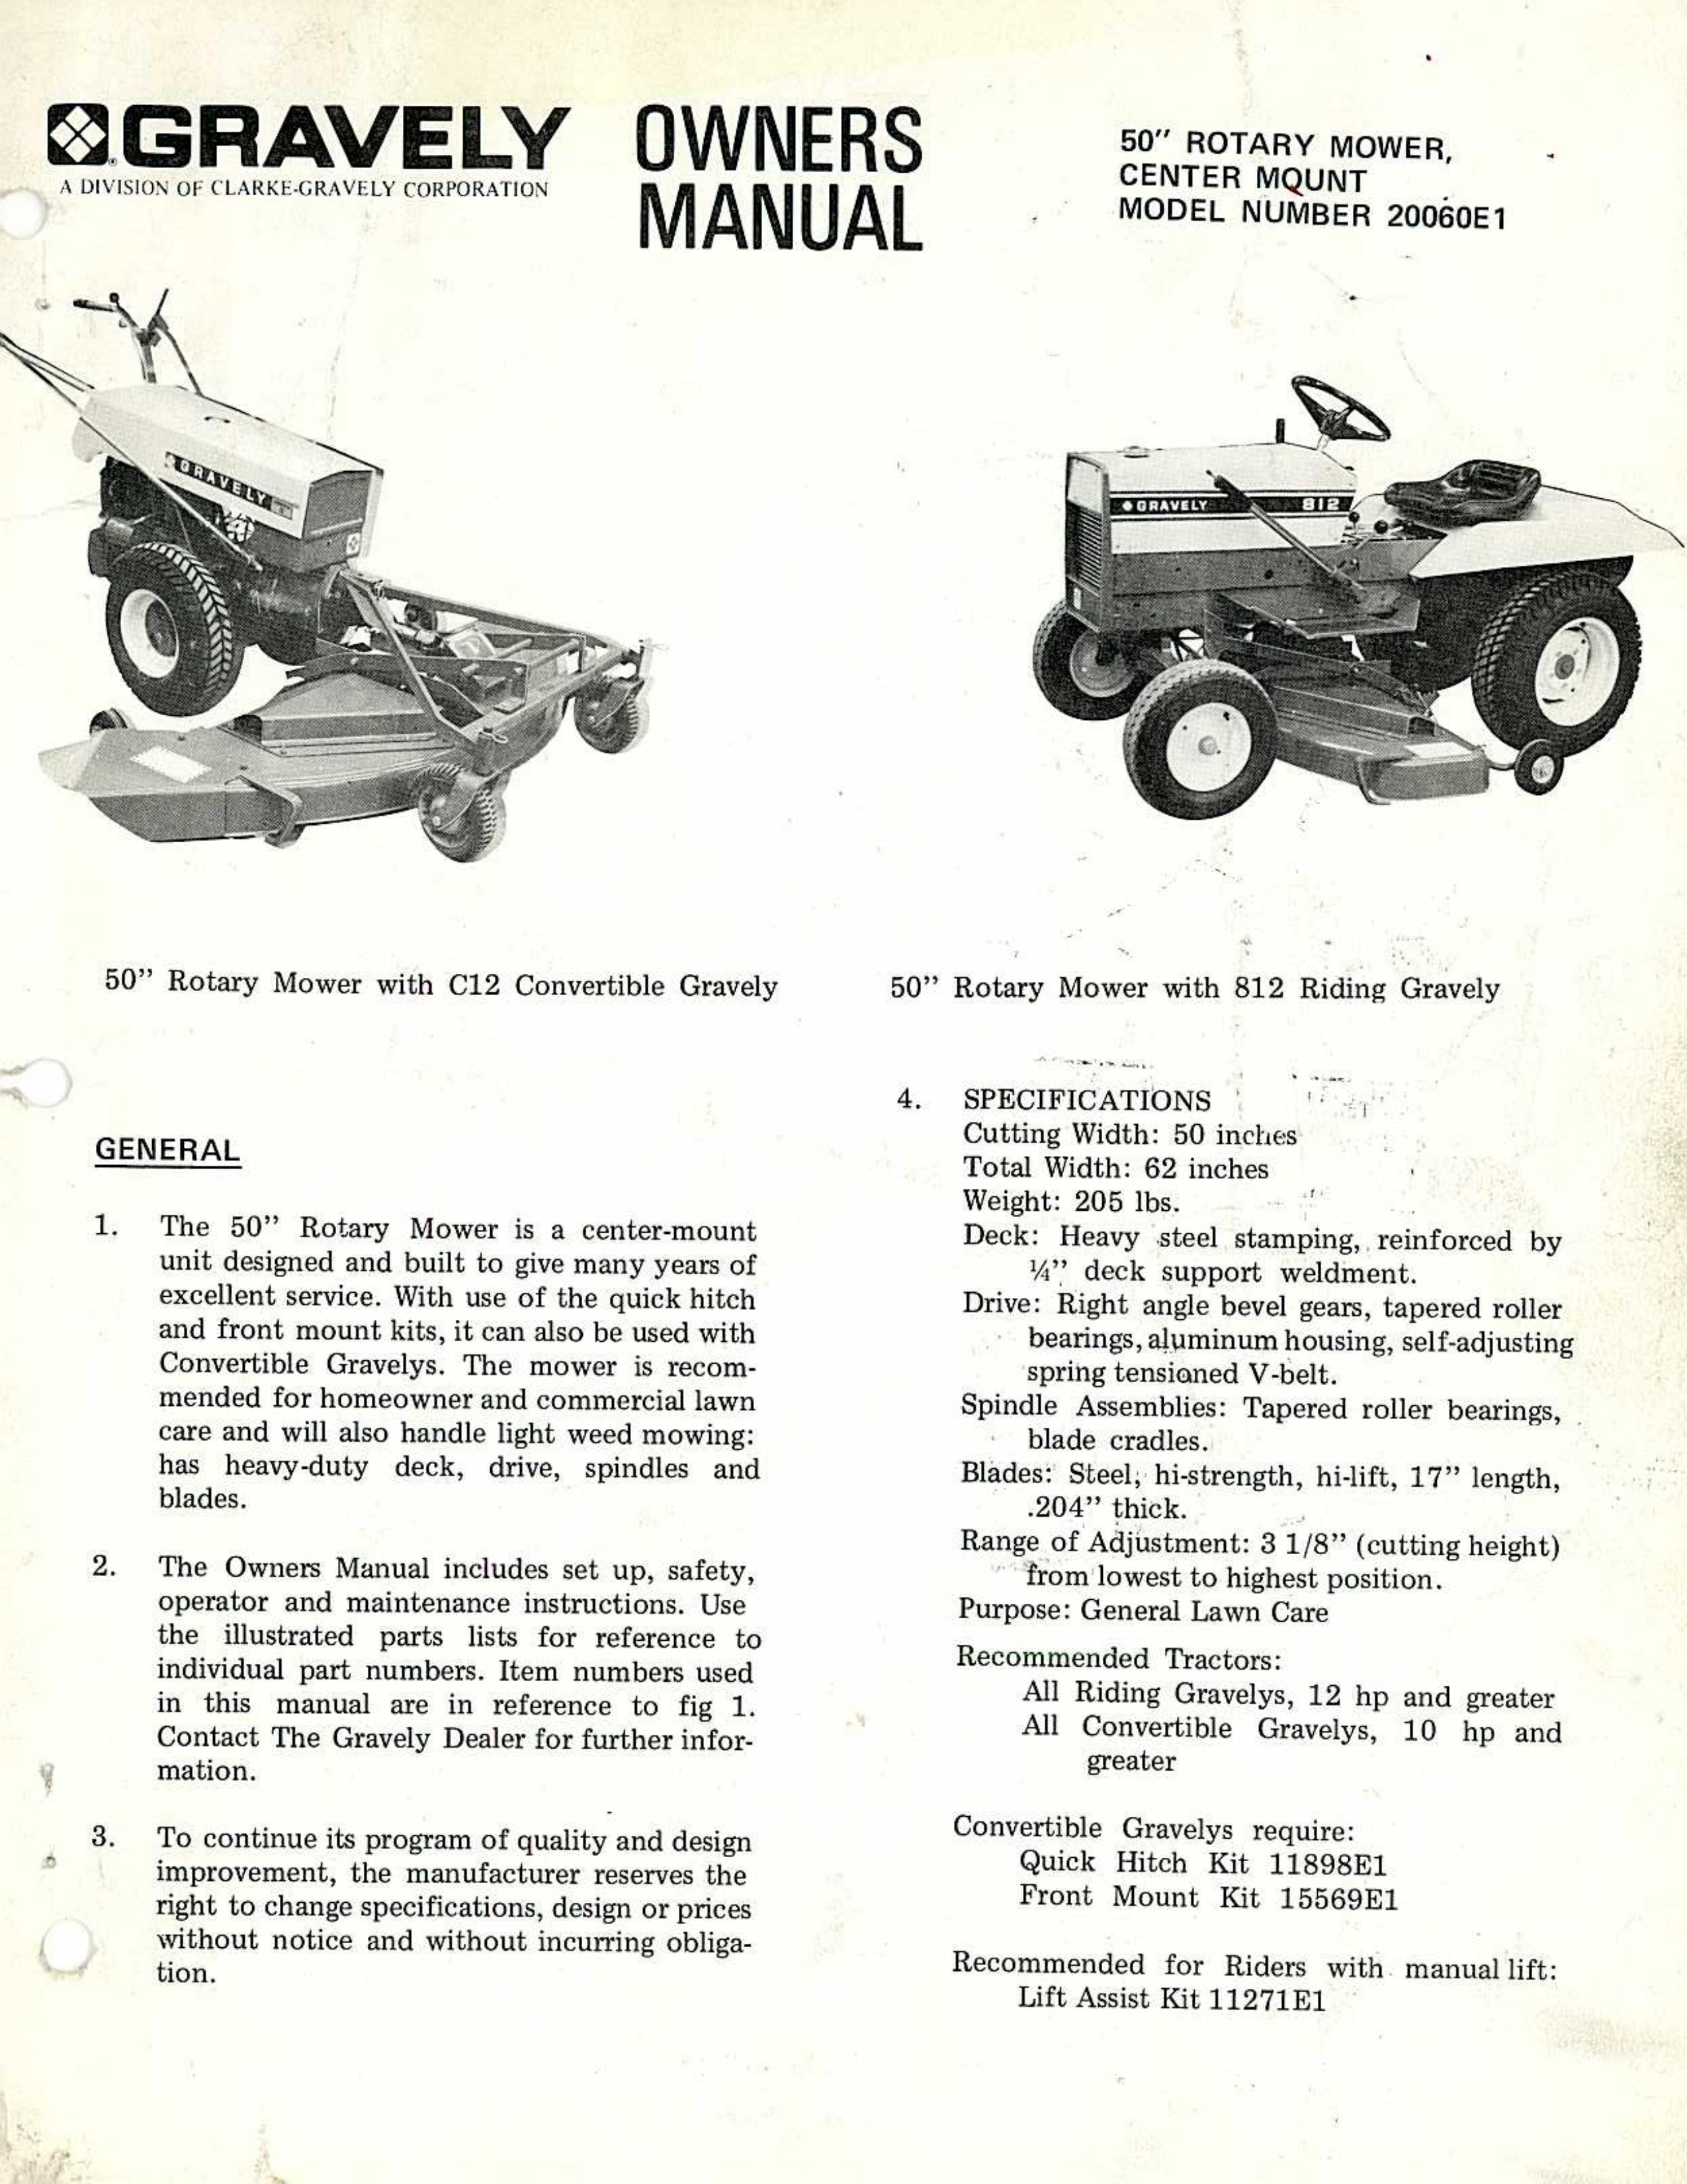 Gravely 2.01E+05 Lawn Mower User Manual